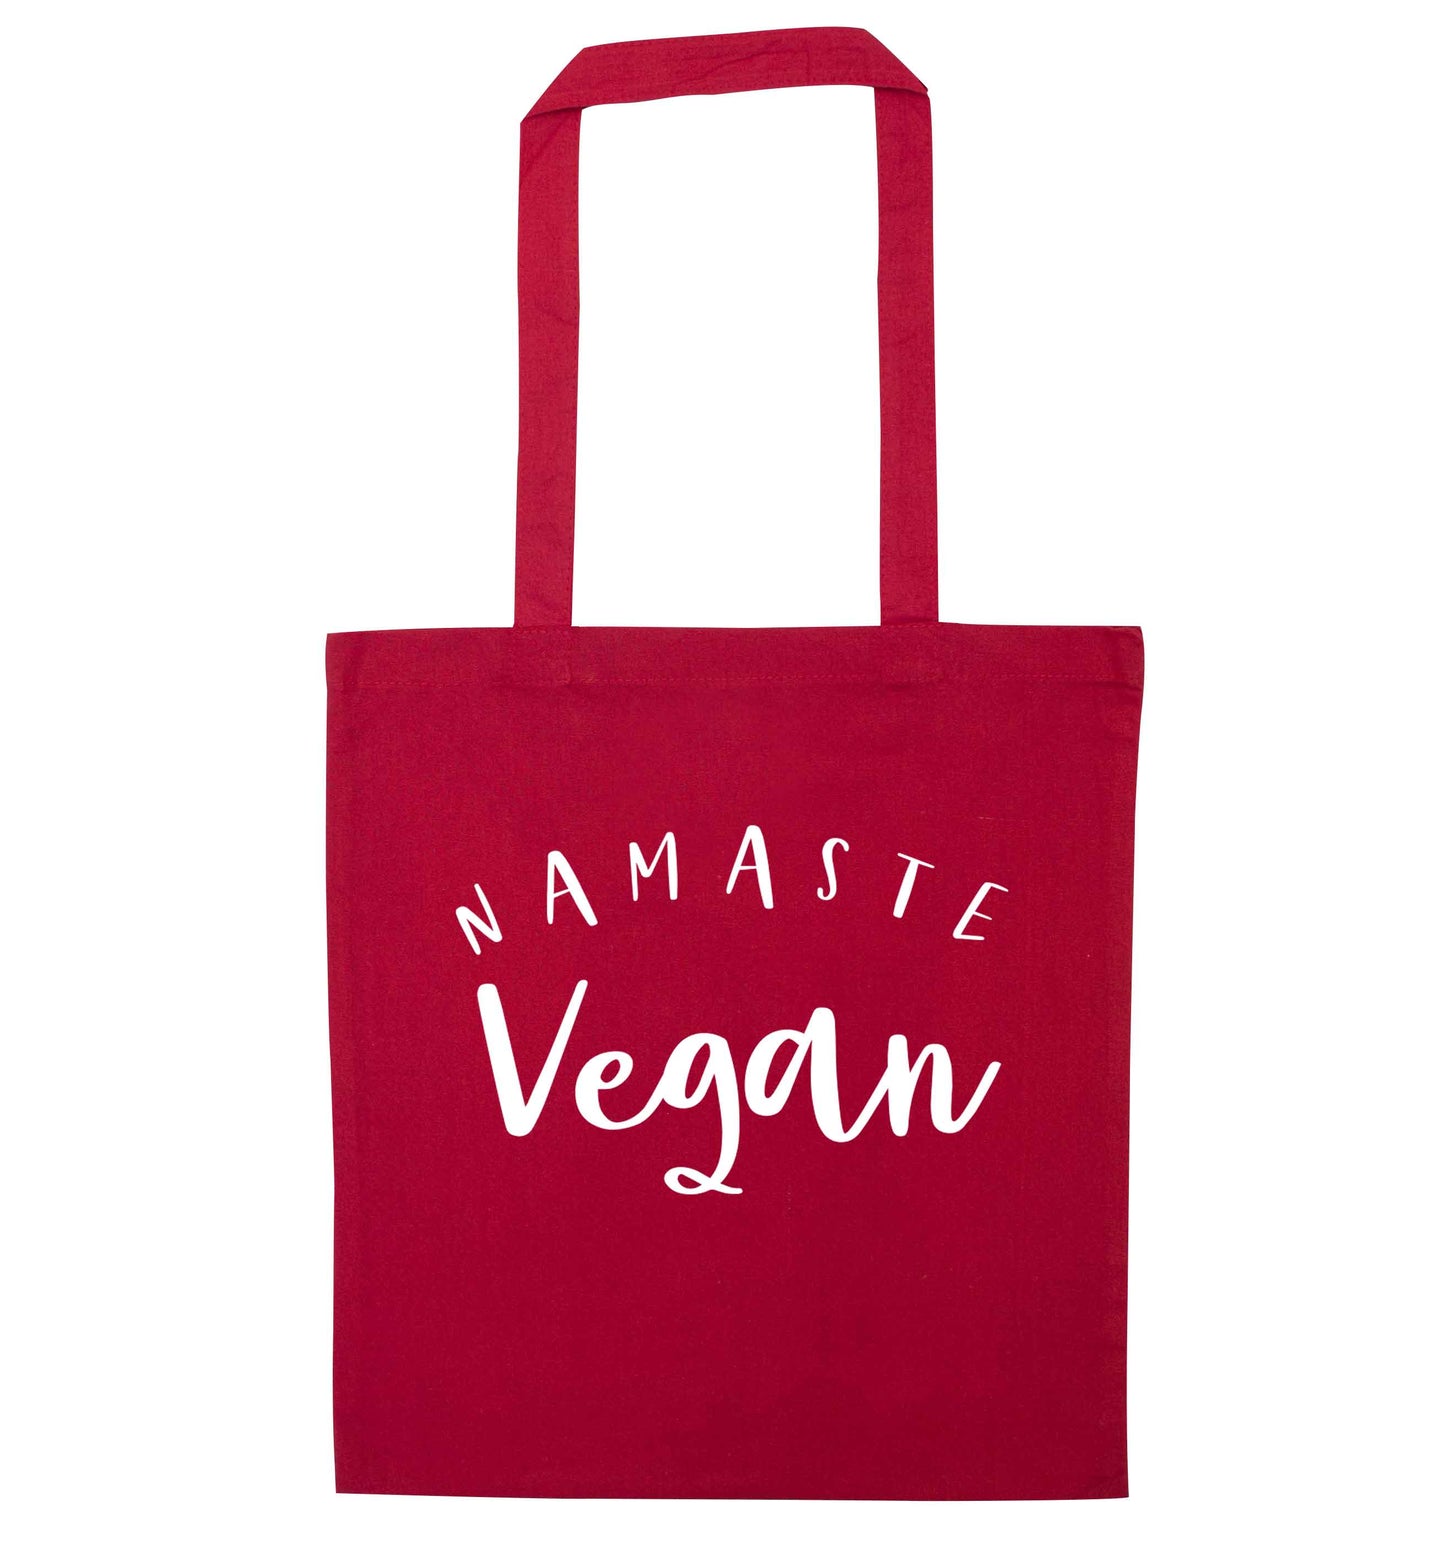 Namaste vegan red tote bag